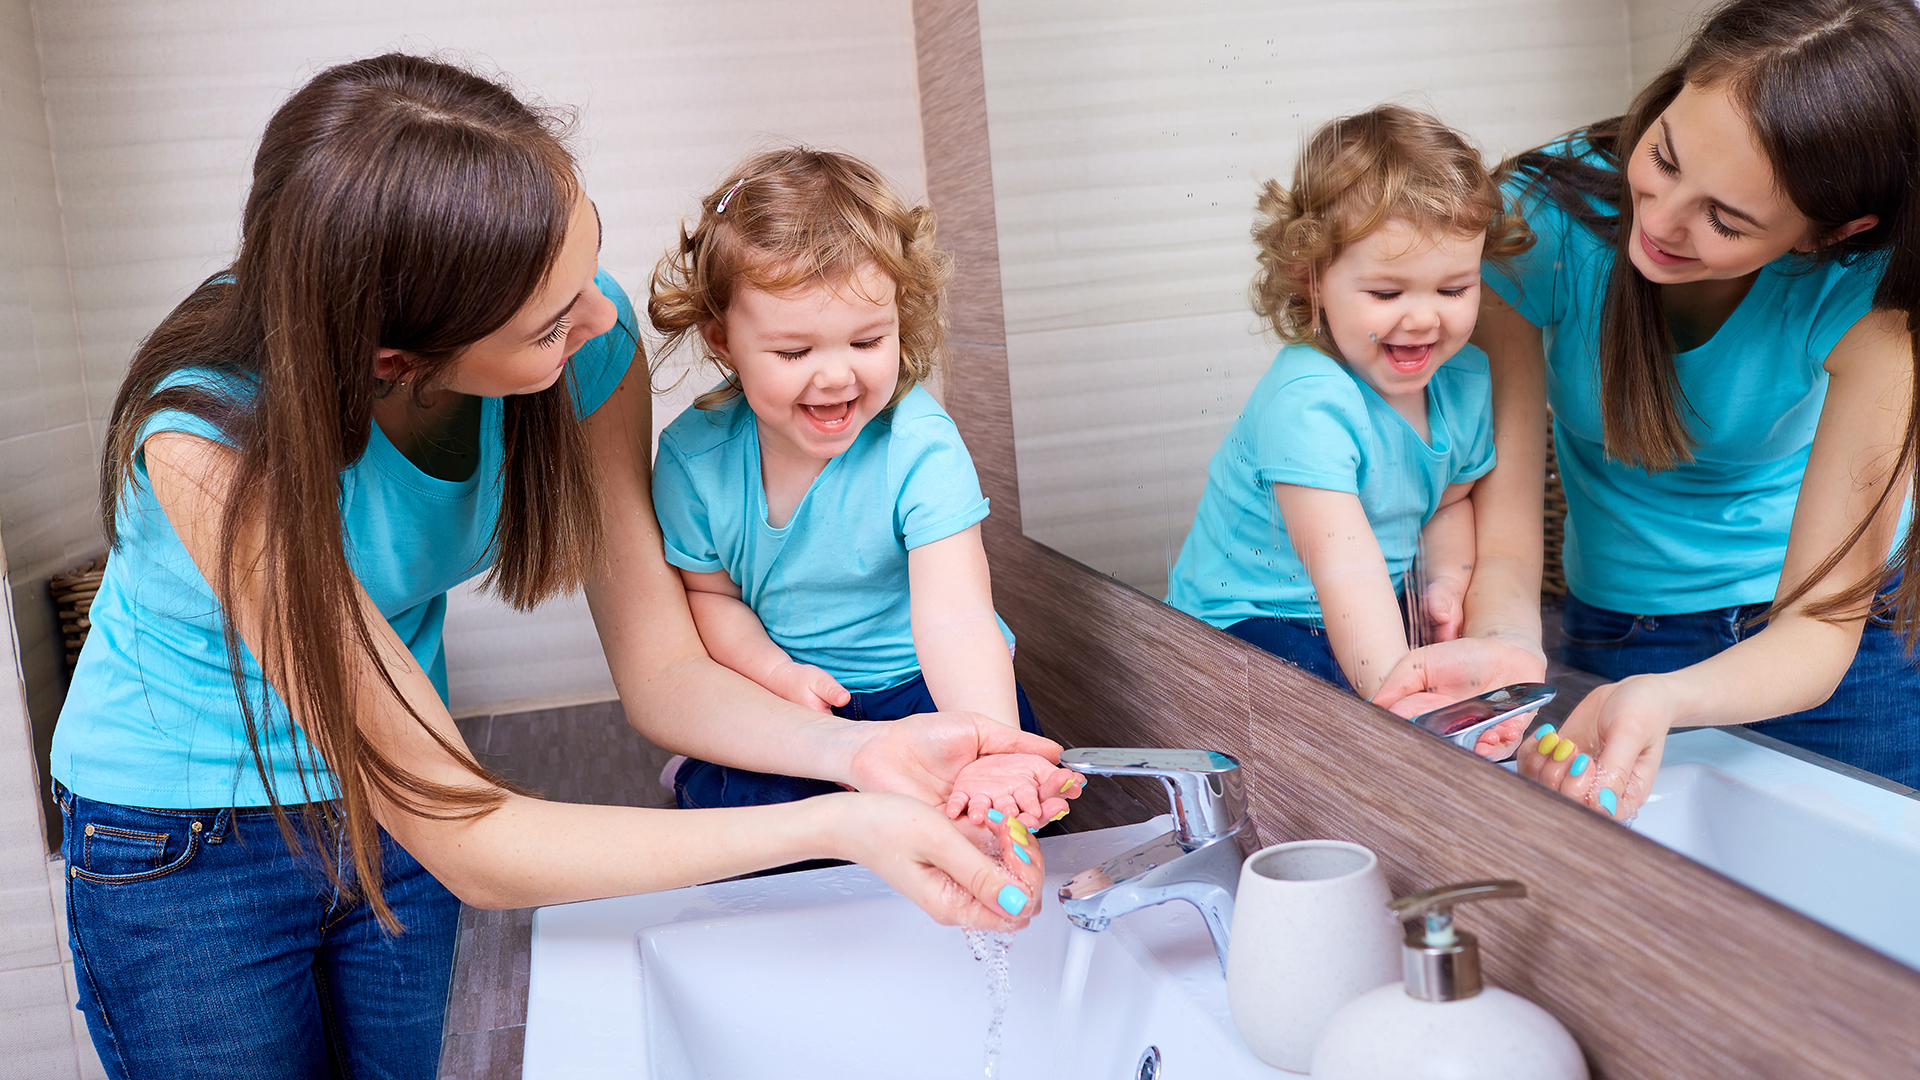 El lavado de manos frecuente es una de las medidas de prevención contra el enterovirus (Getty Images)